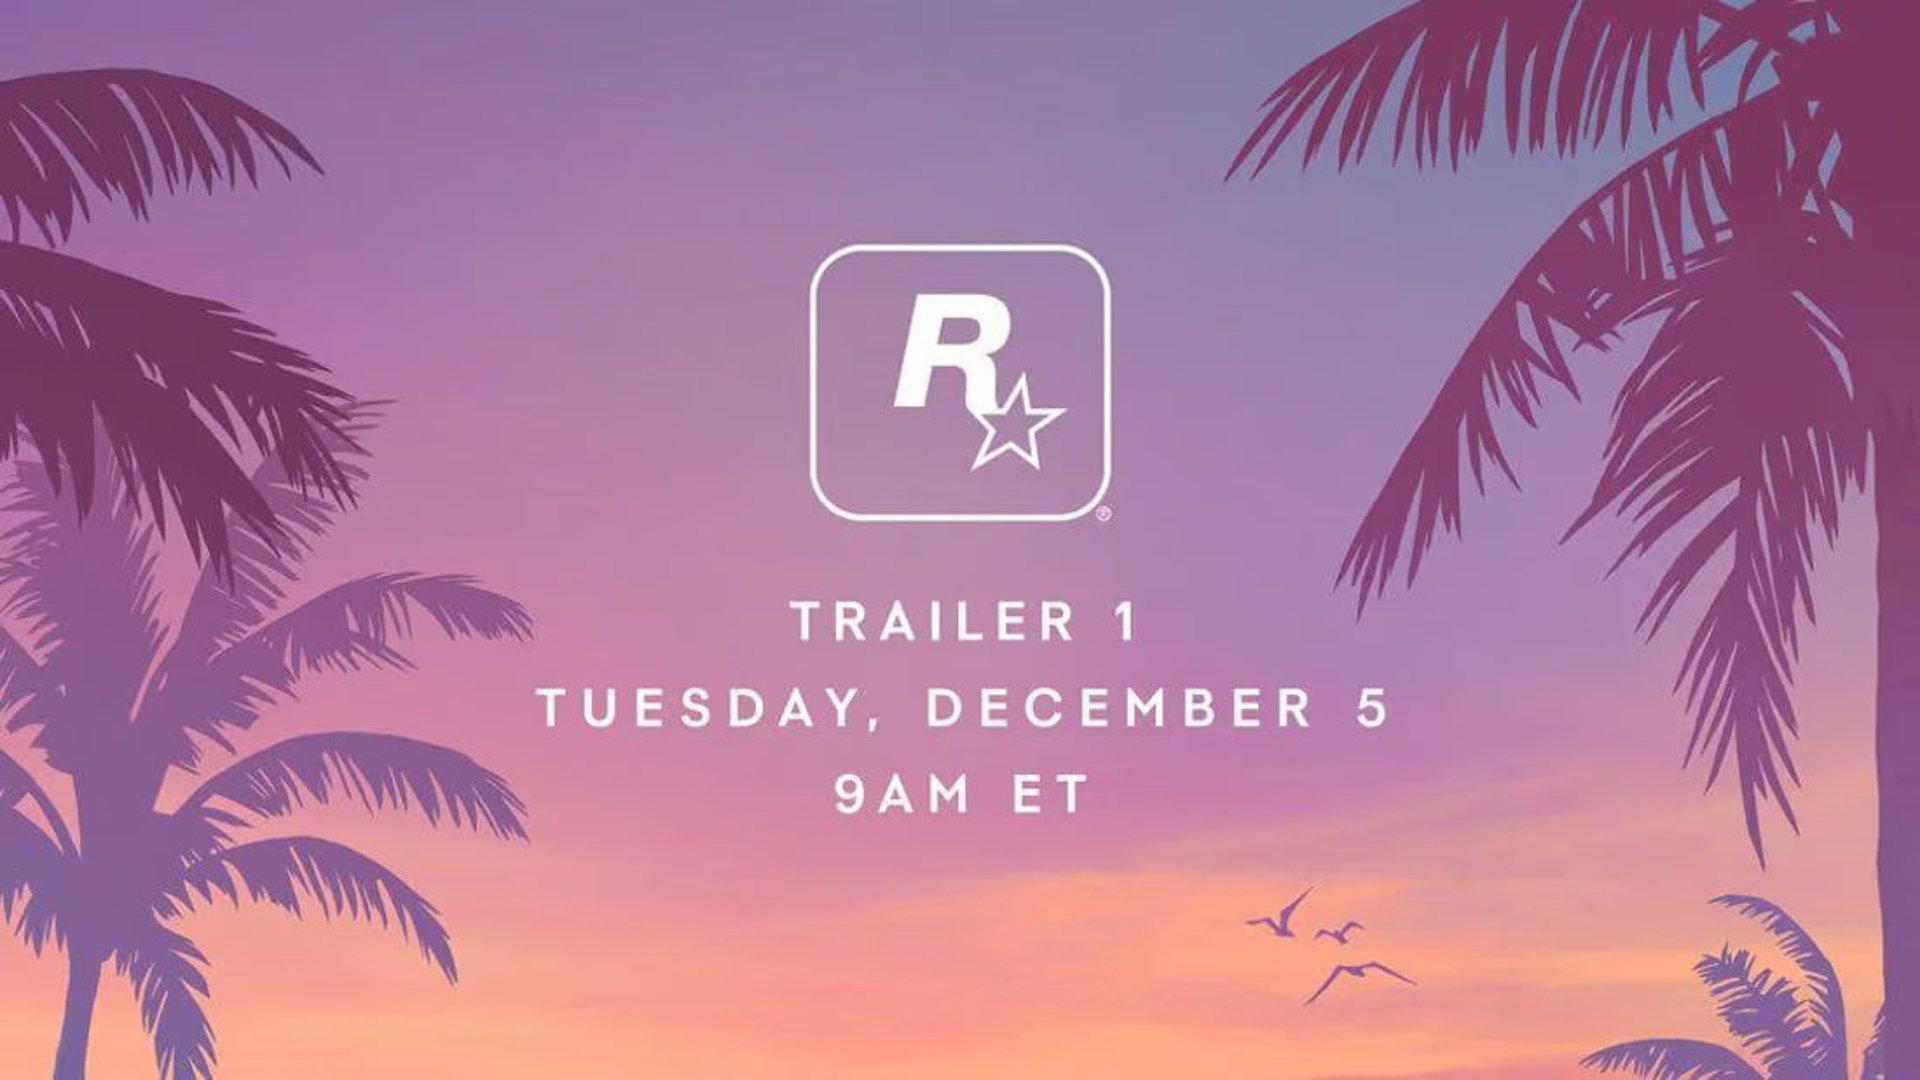 Rockstar games announces release of GTA VI promo video